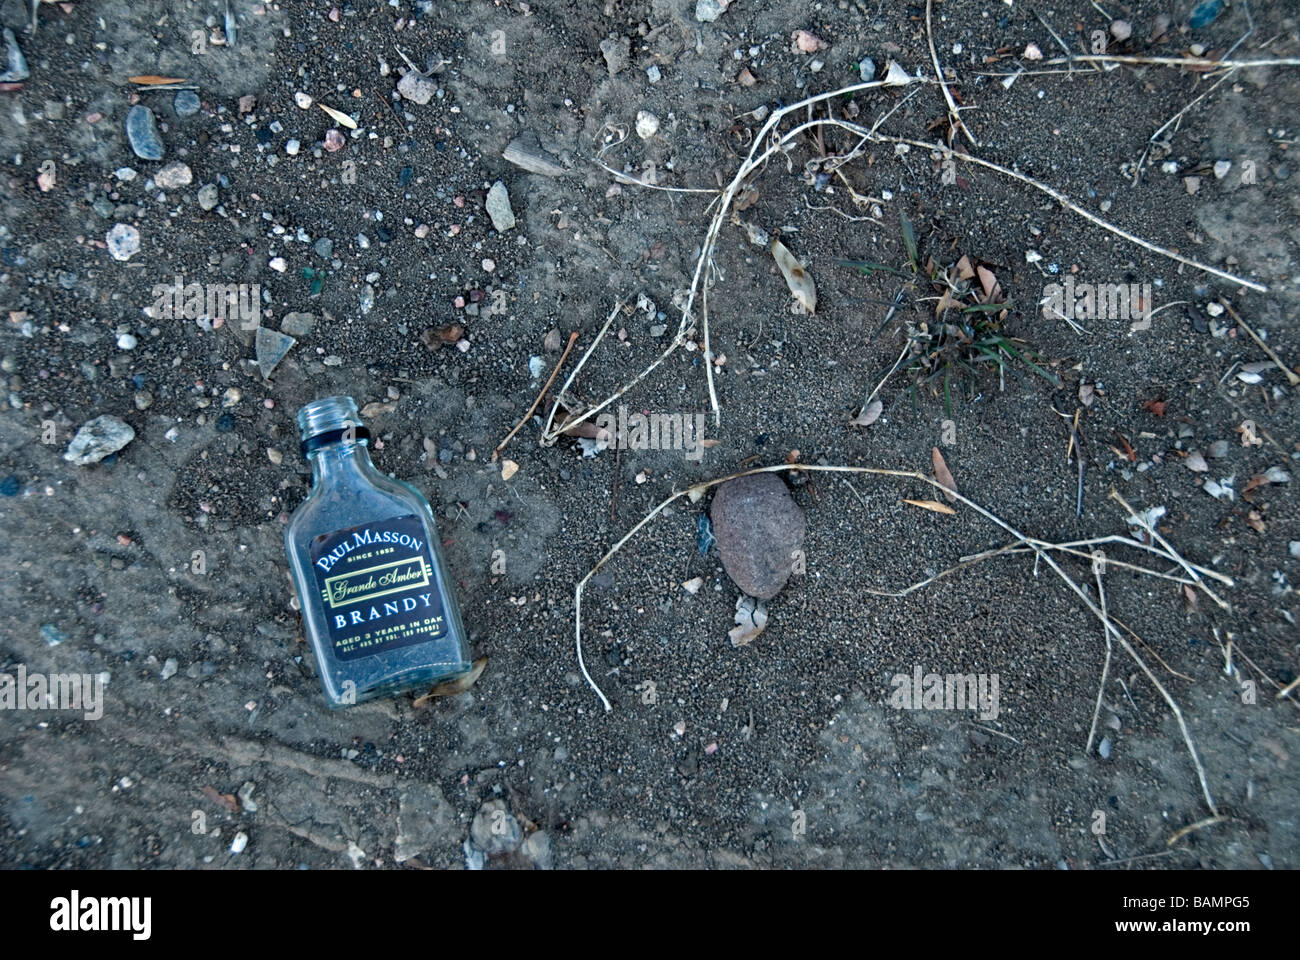 Botella de brandy vacía y descarta descarta cerca de la parada de autobús, Colorado US Foto de stock